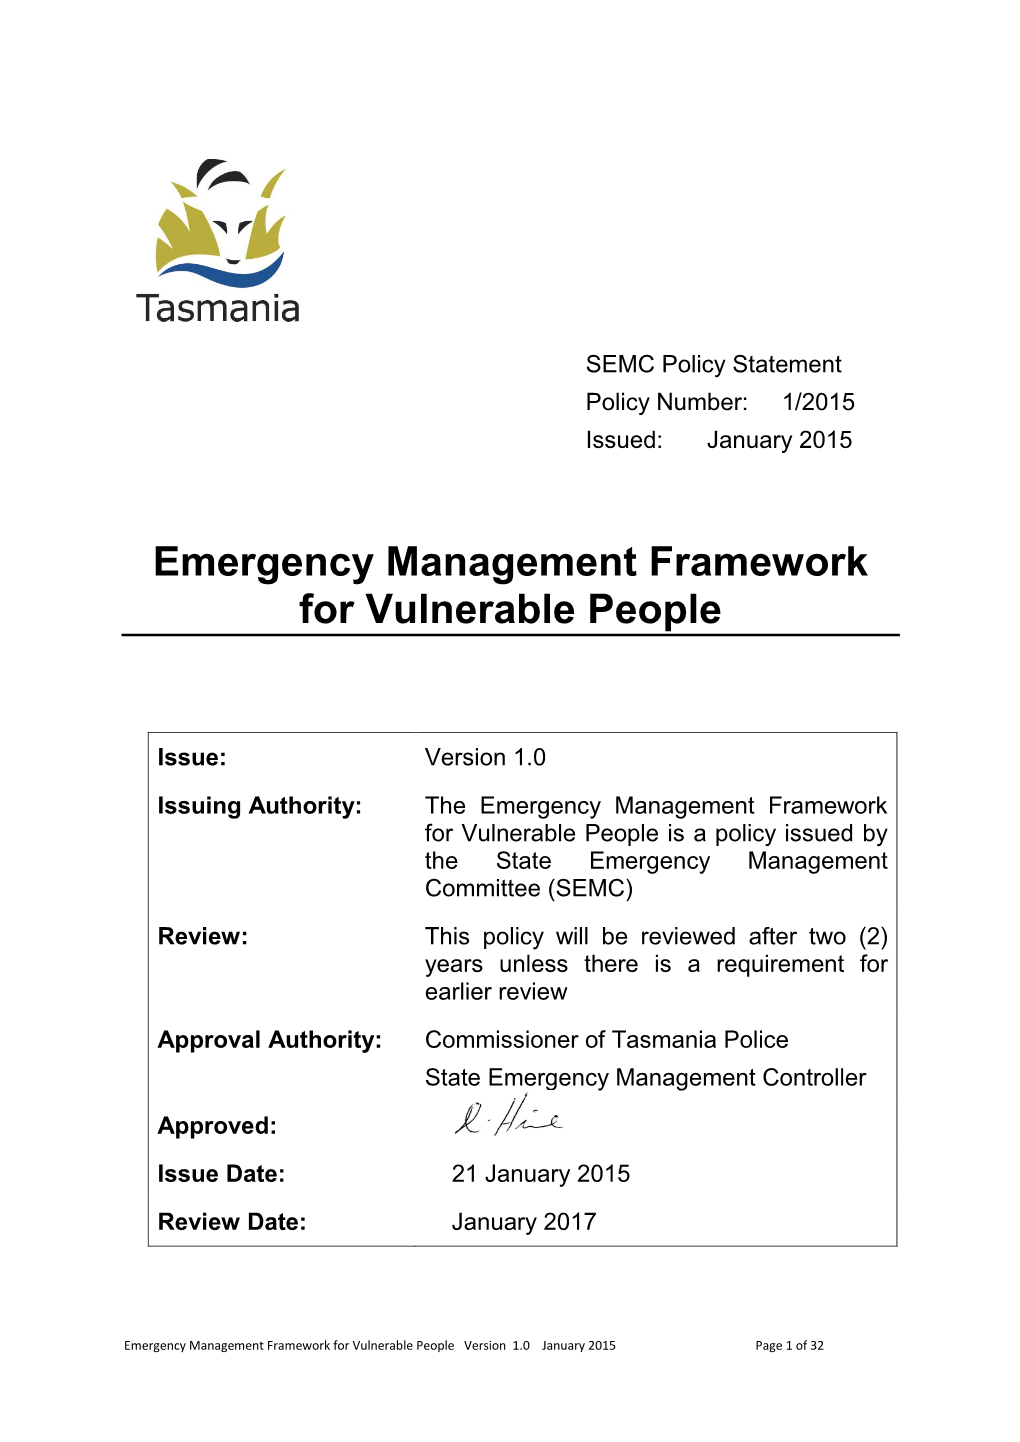 Emergency Management Framework for Vulnerable People